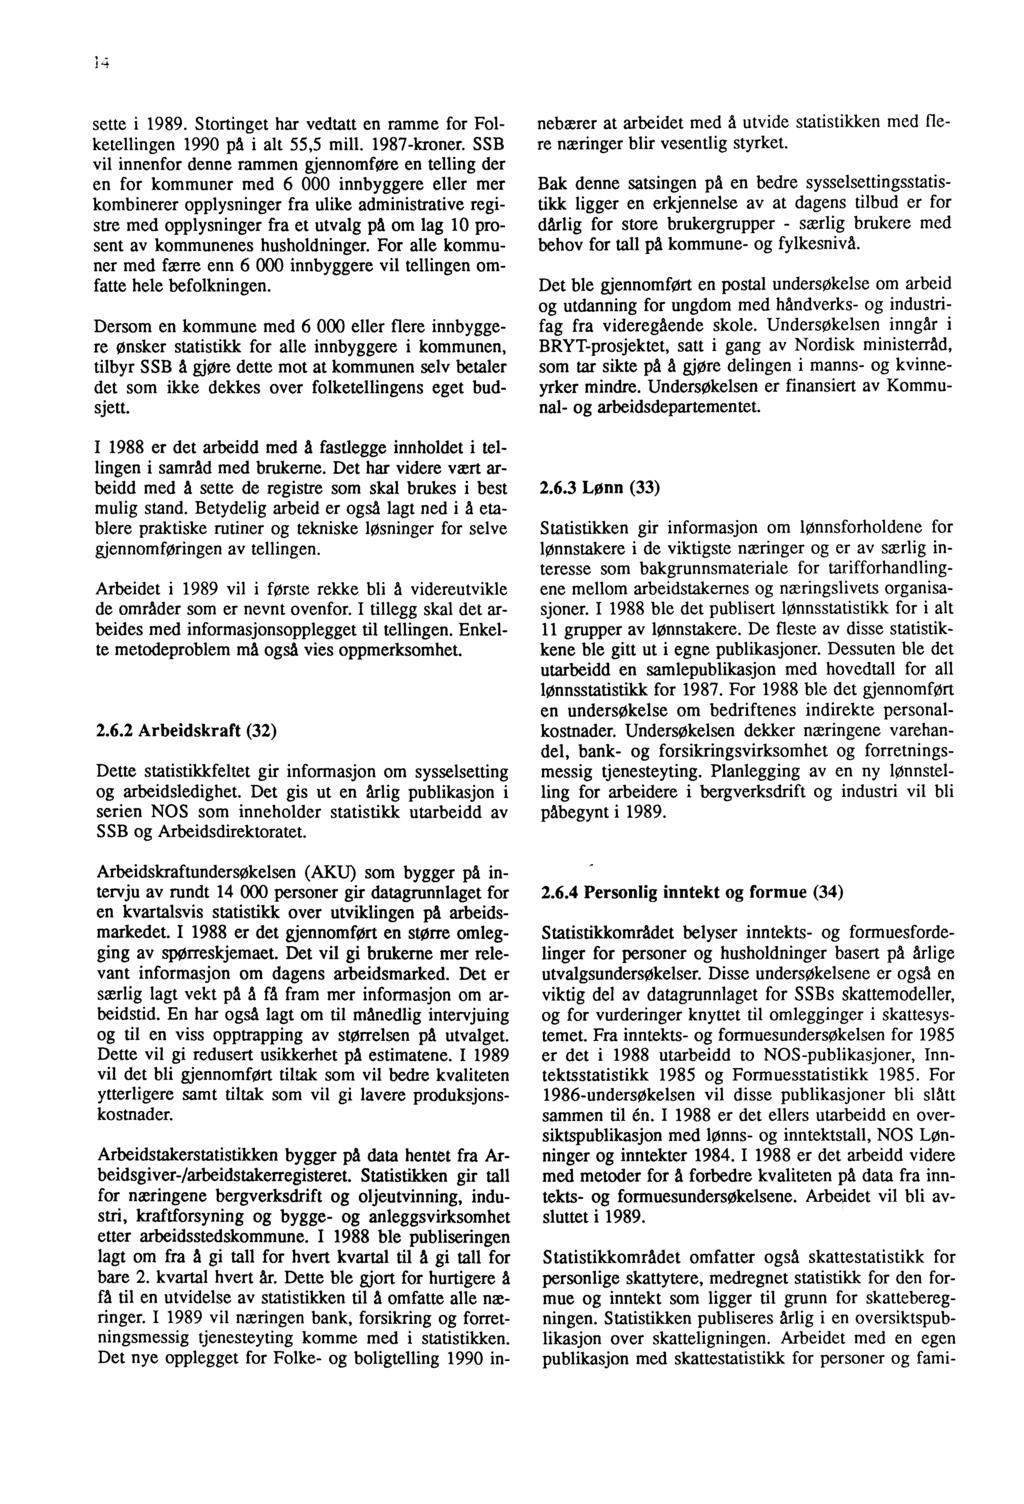 4 sette i 1989. Stortinget har vedtatt en ramme for Folketellingen 1990 på i alt 55,5 mill. 1987-kroner.